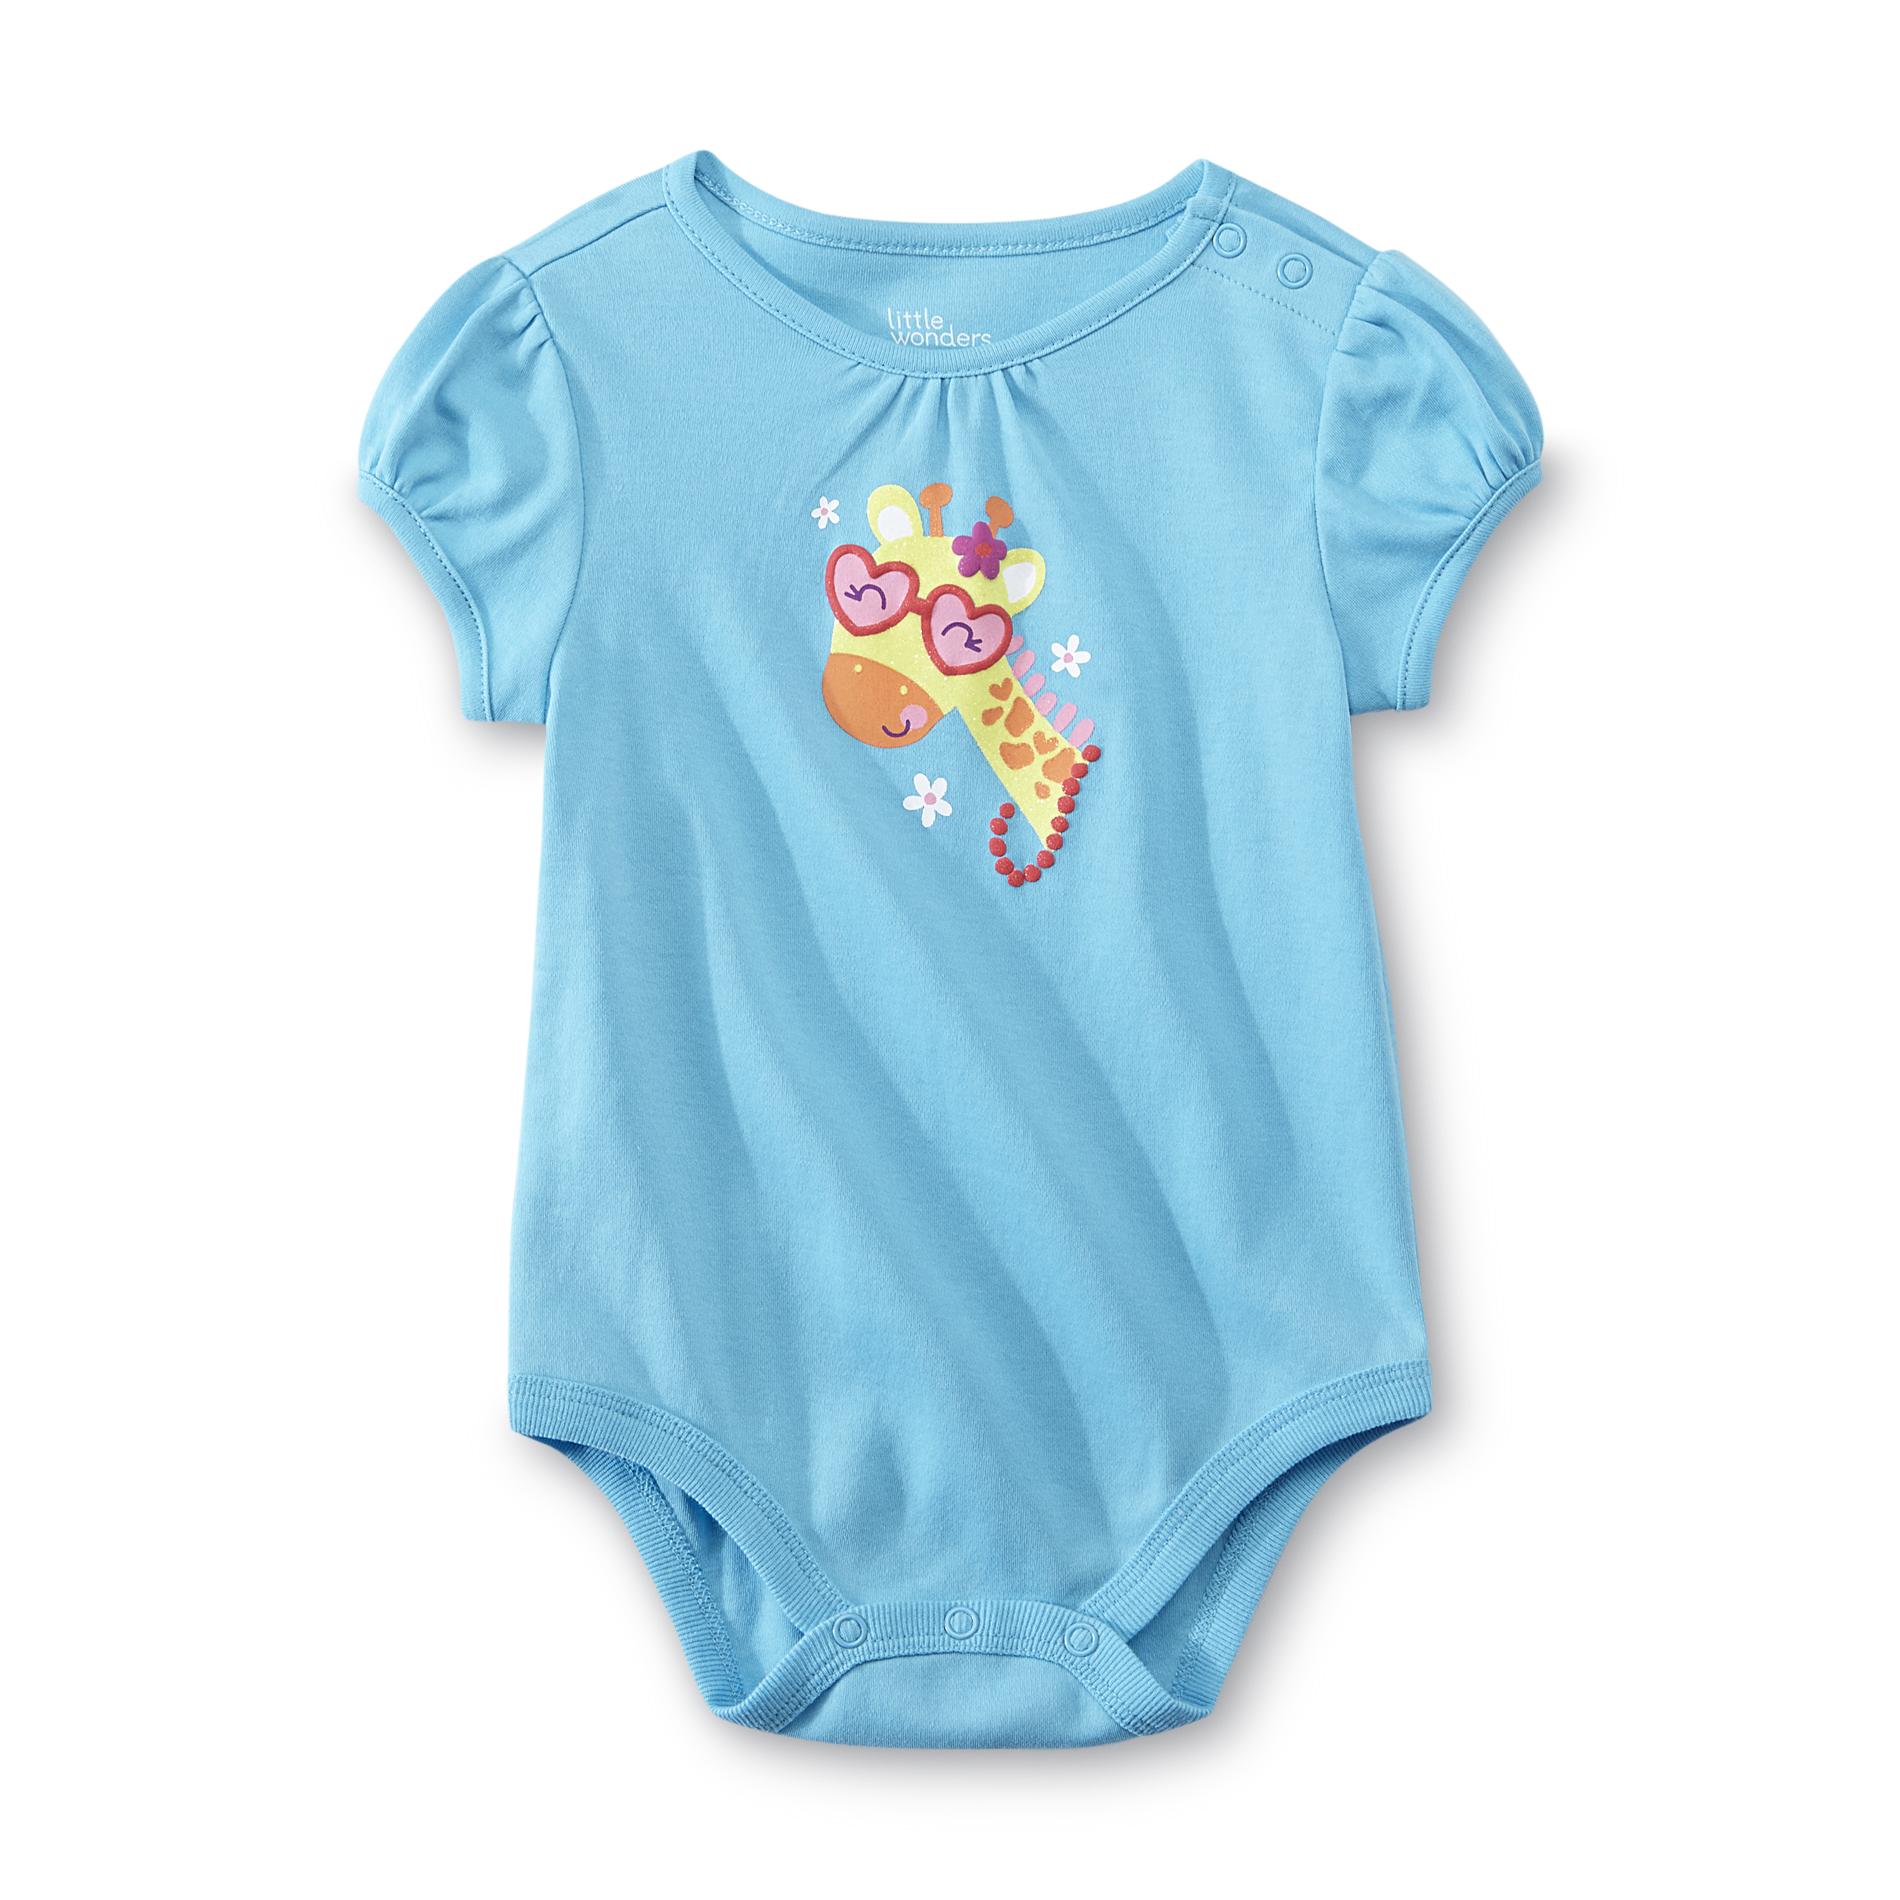 Little Wonders Newborn & Infant Girl's Bodysuit - Giraffe